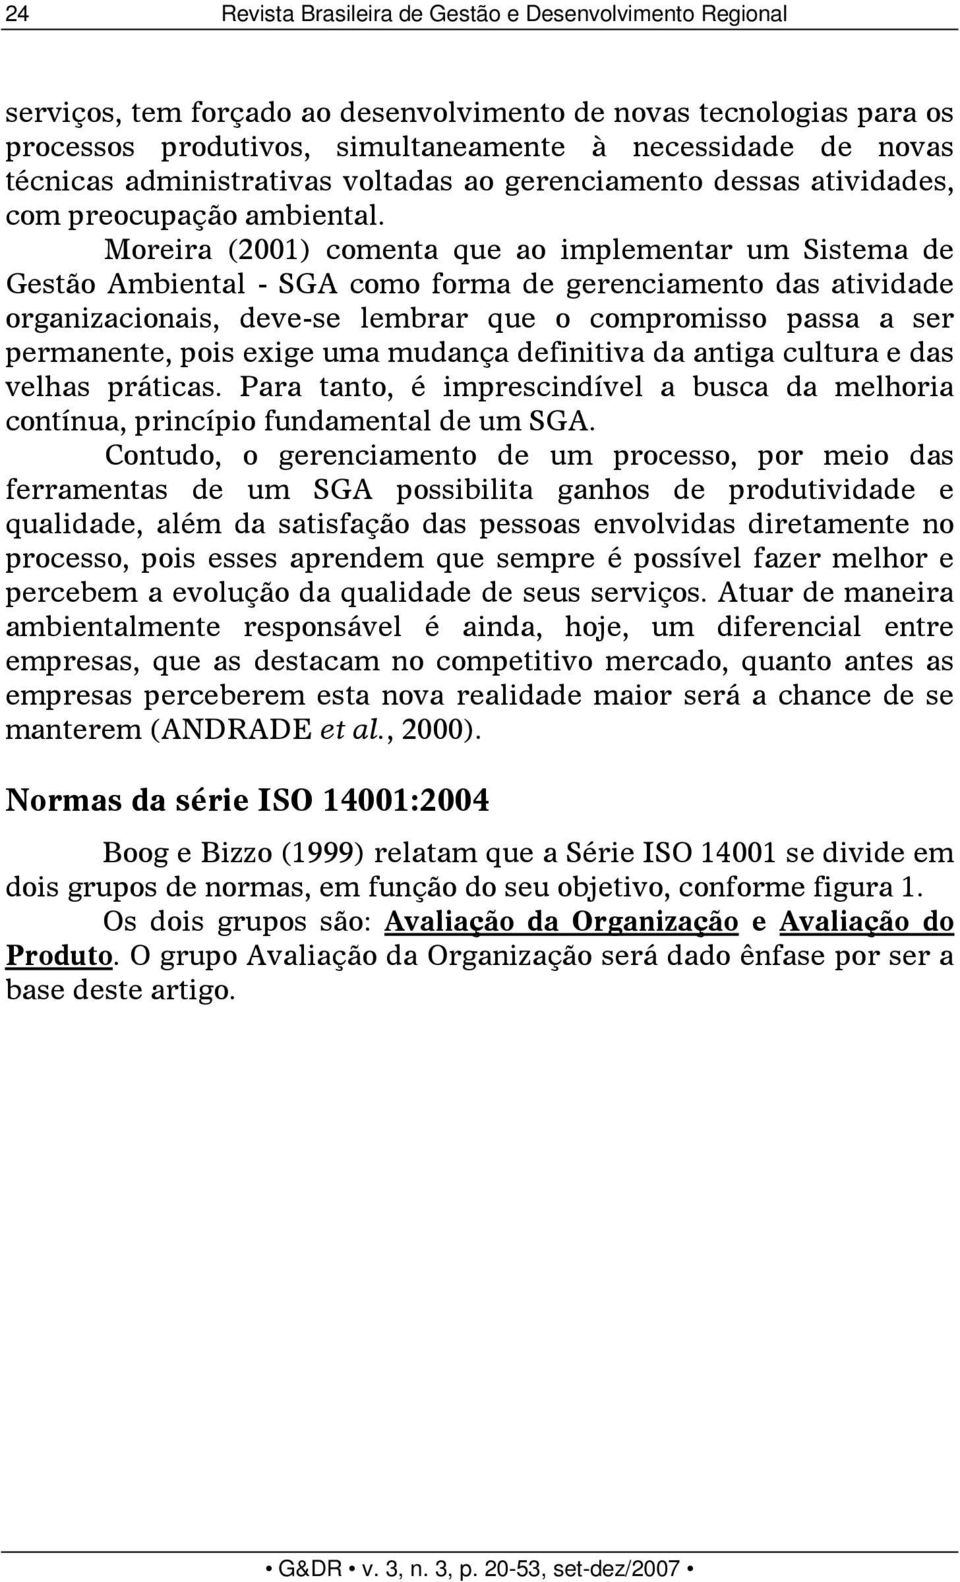 Moreira (2001) comenta que ao implementar um Sistema de Gestão Ambiental - SGA como forma de gerenciamento das atividade organizacionais, deve-se lembrar que o compromisso passa a ser permanente,